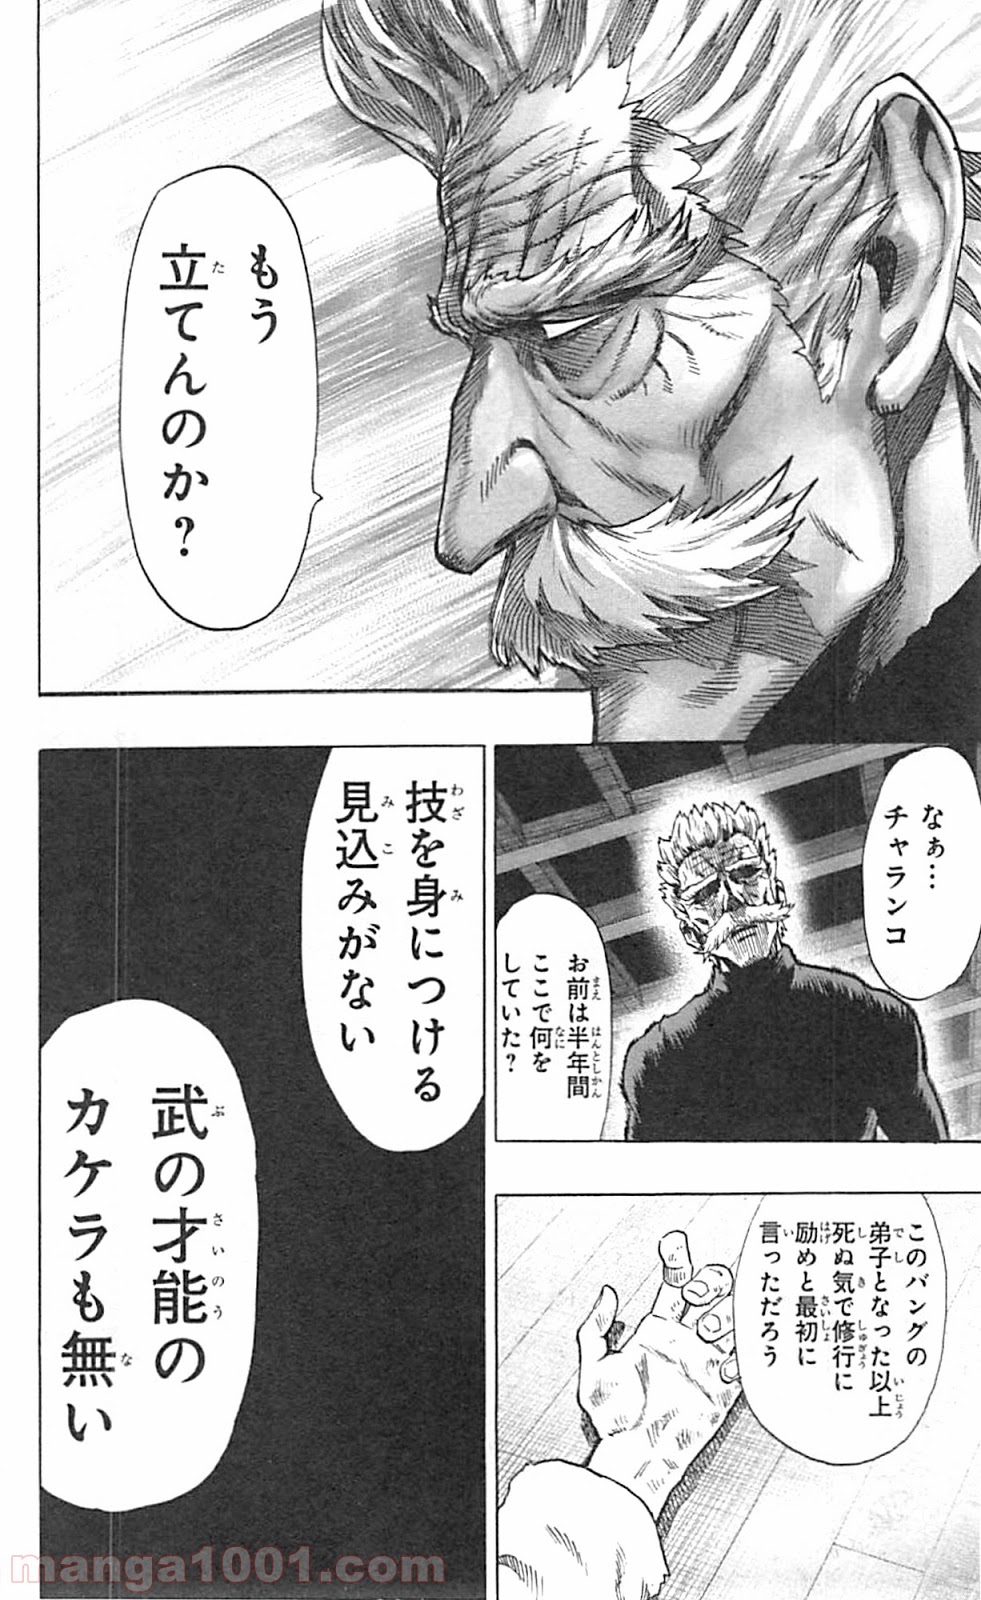 ワンパンマン One Punch Man Raw 第46話 Manga Raw